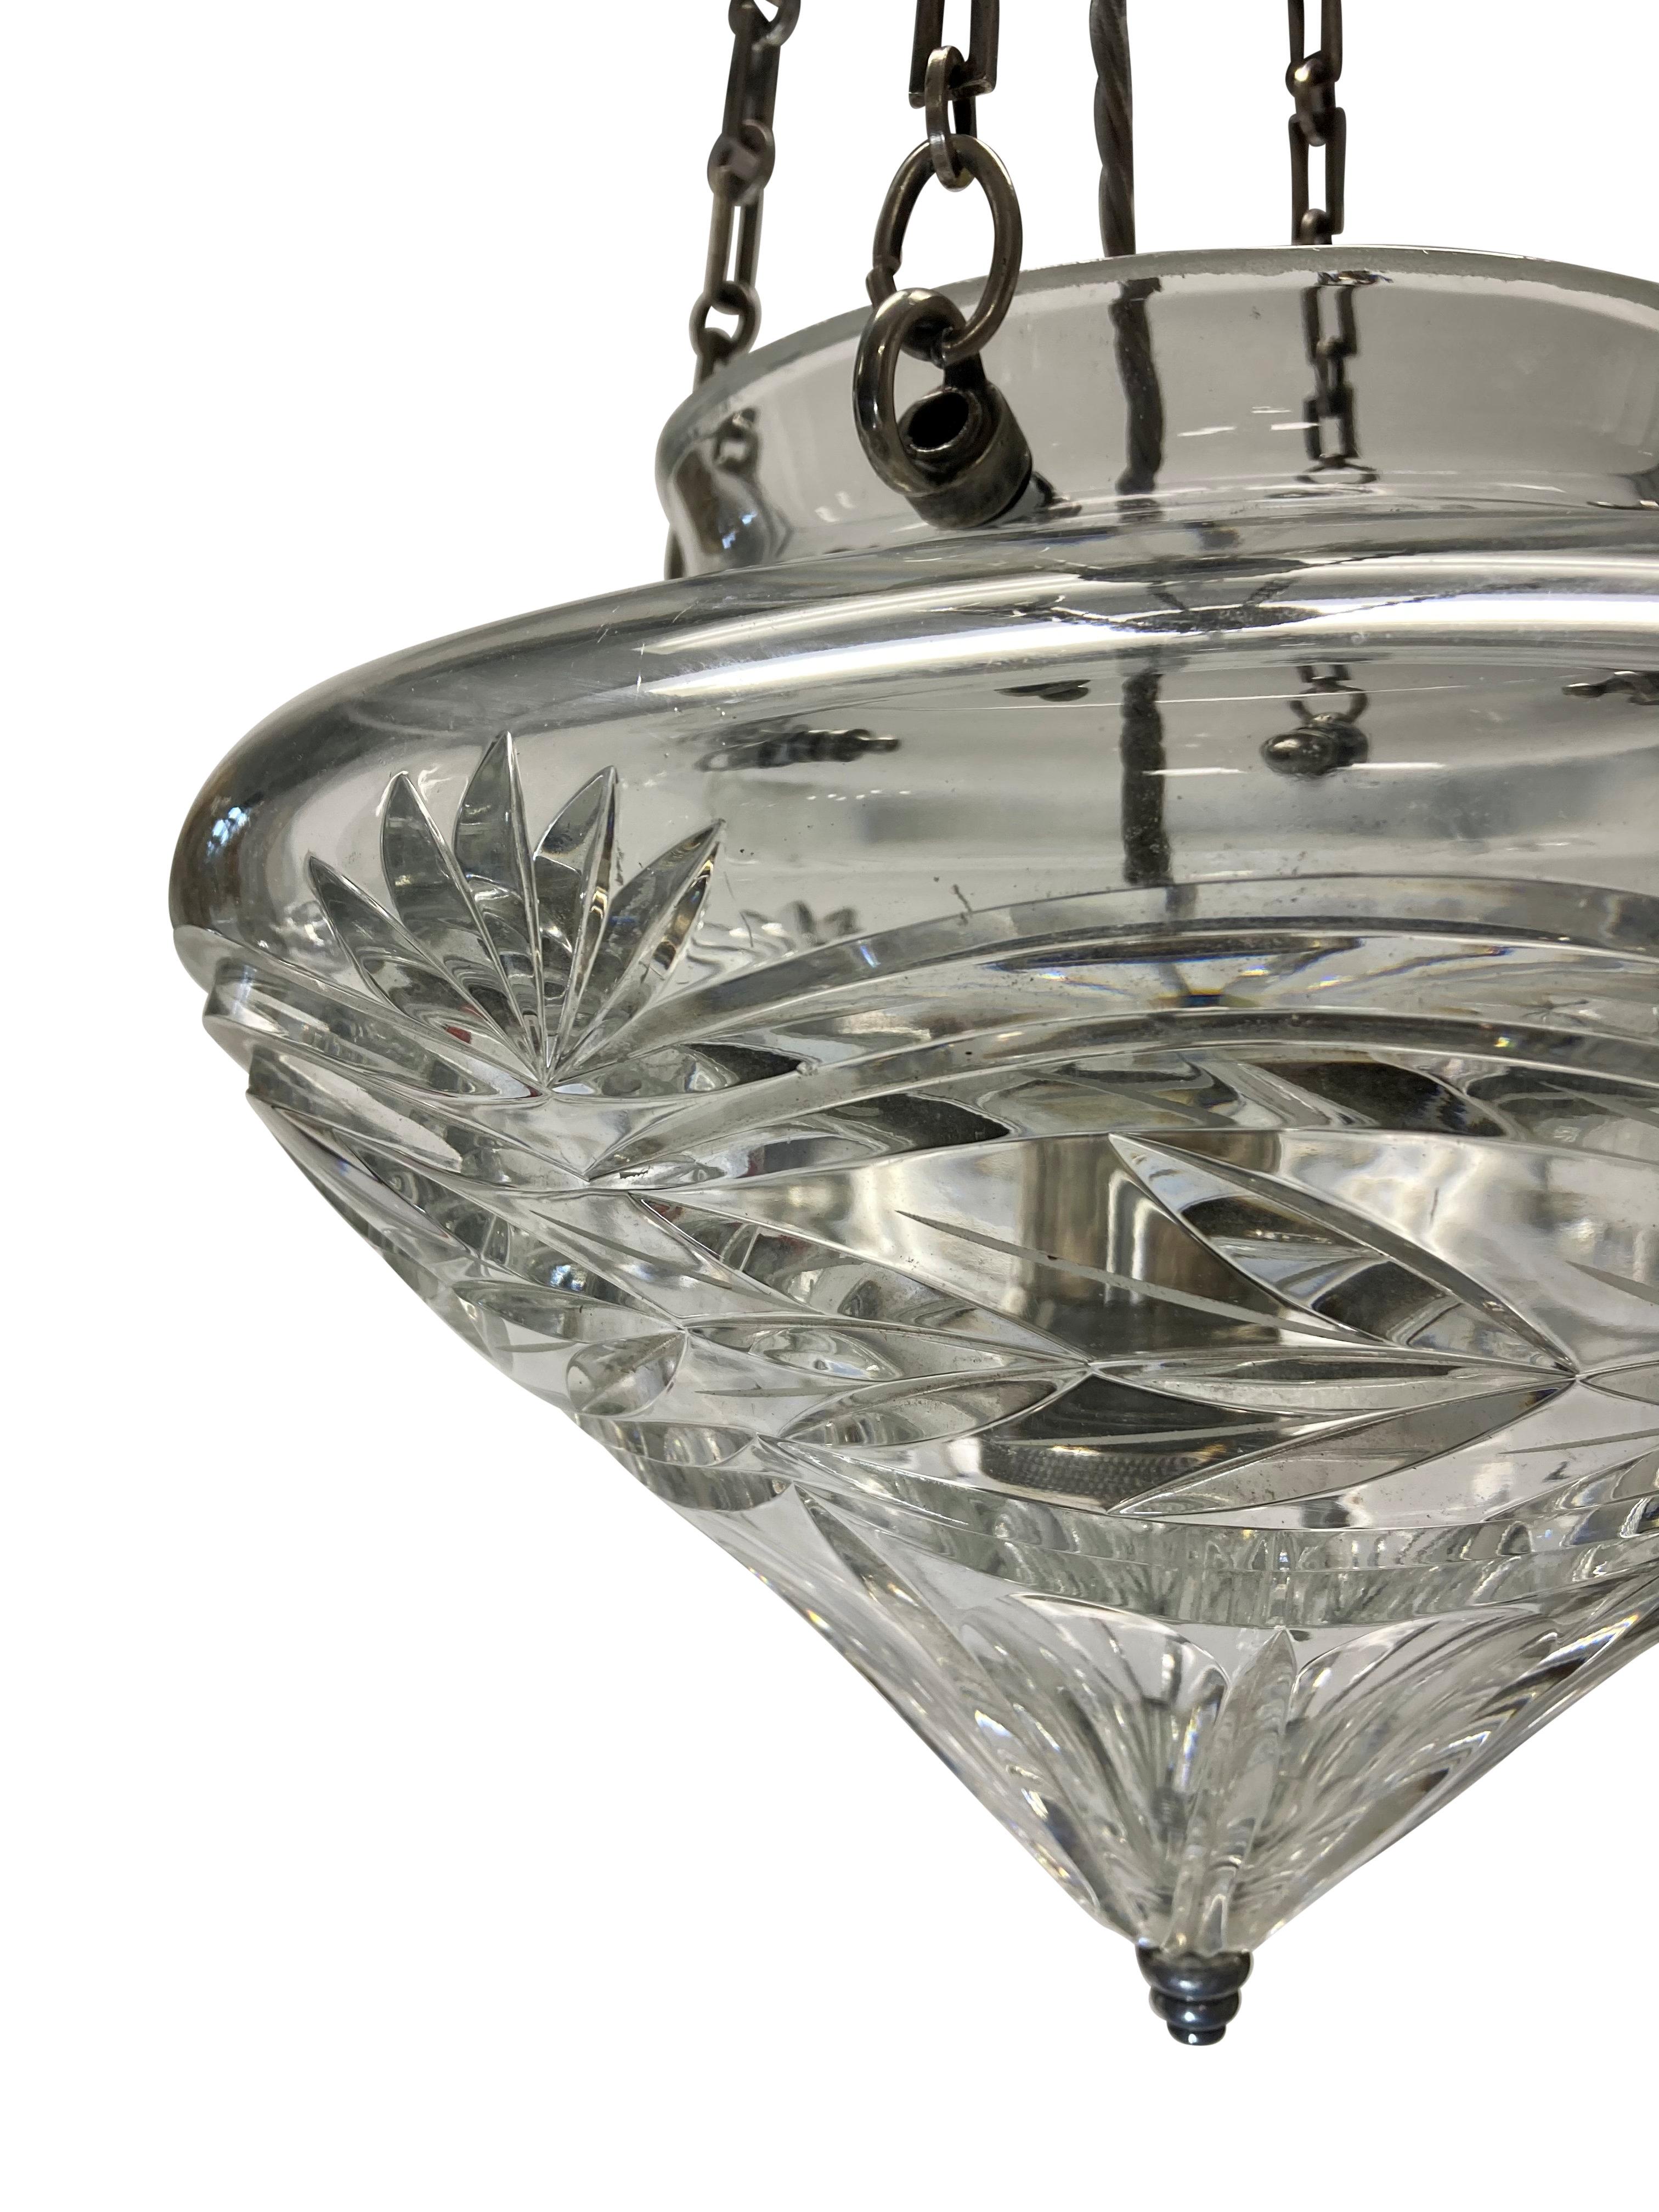 Lampe suspendue en verre taillé de style édouardien anglais, avec des accessoires en bronze argenté.